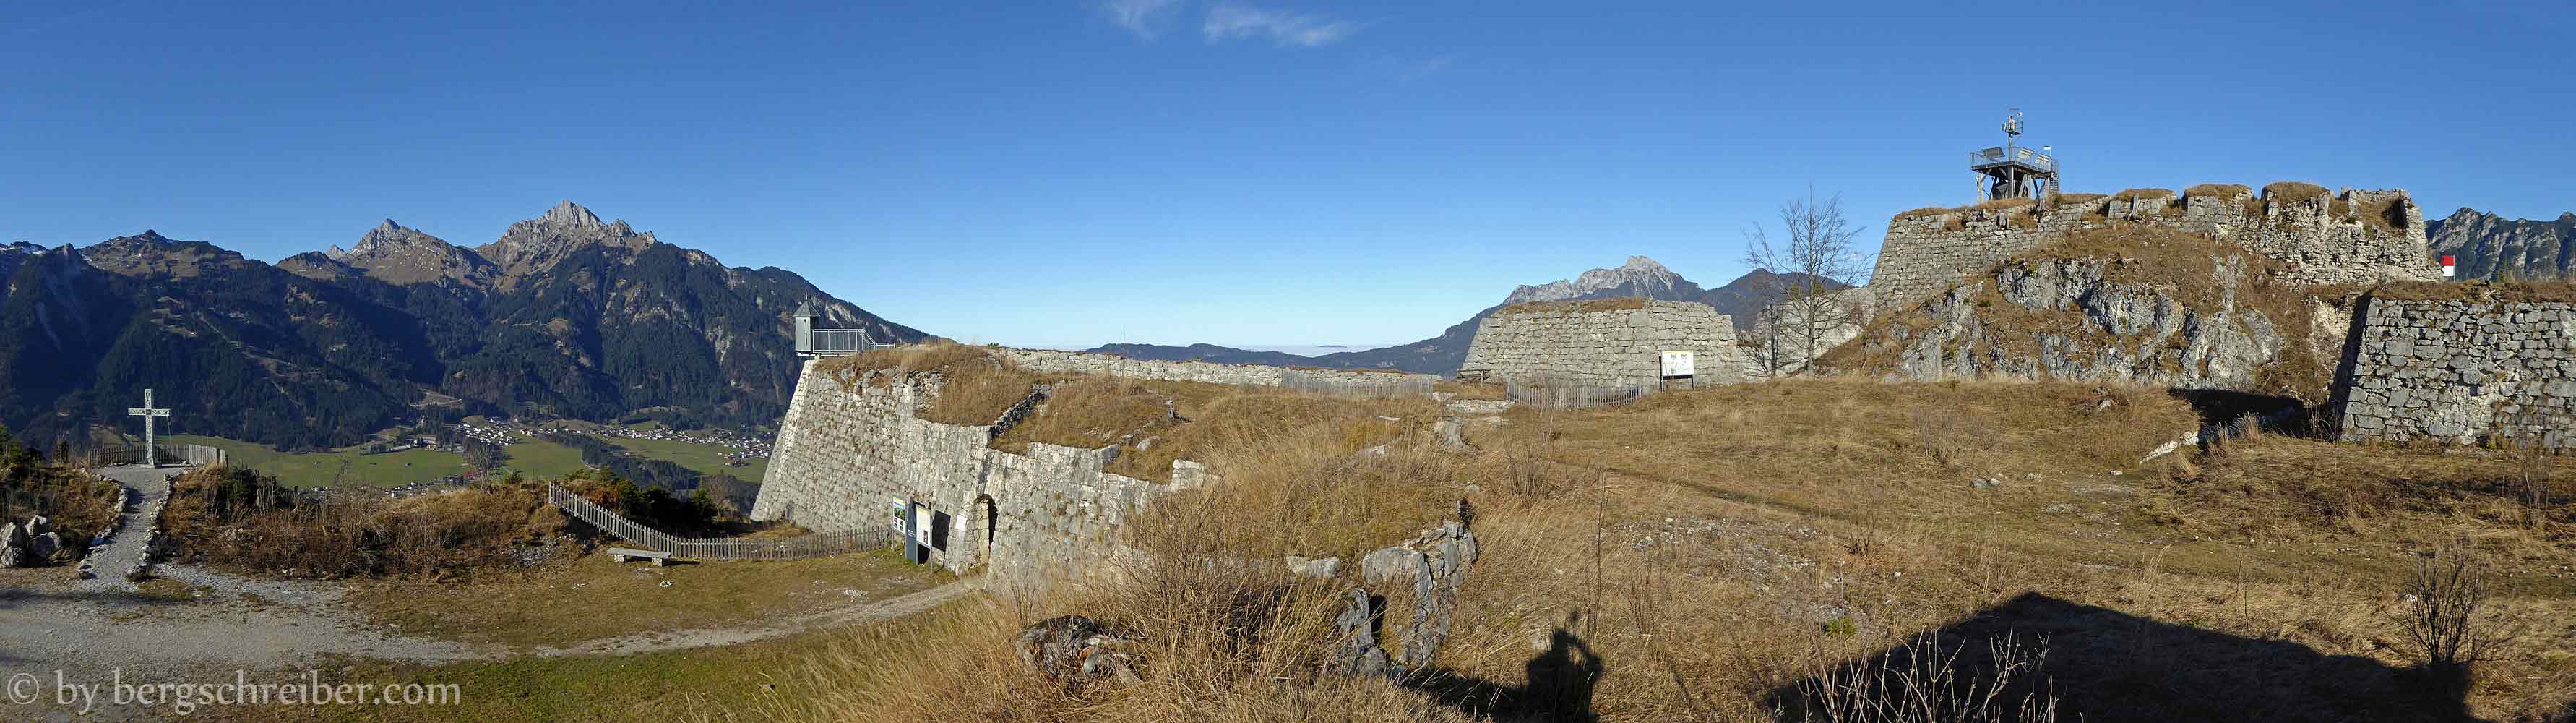 Schaufestung Schlosskopf, Blick über die Festungsmauern zu den Tannheimer Bergen